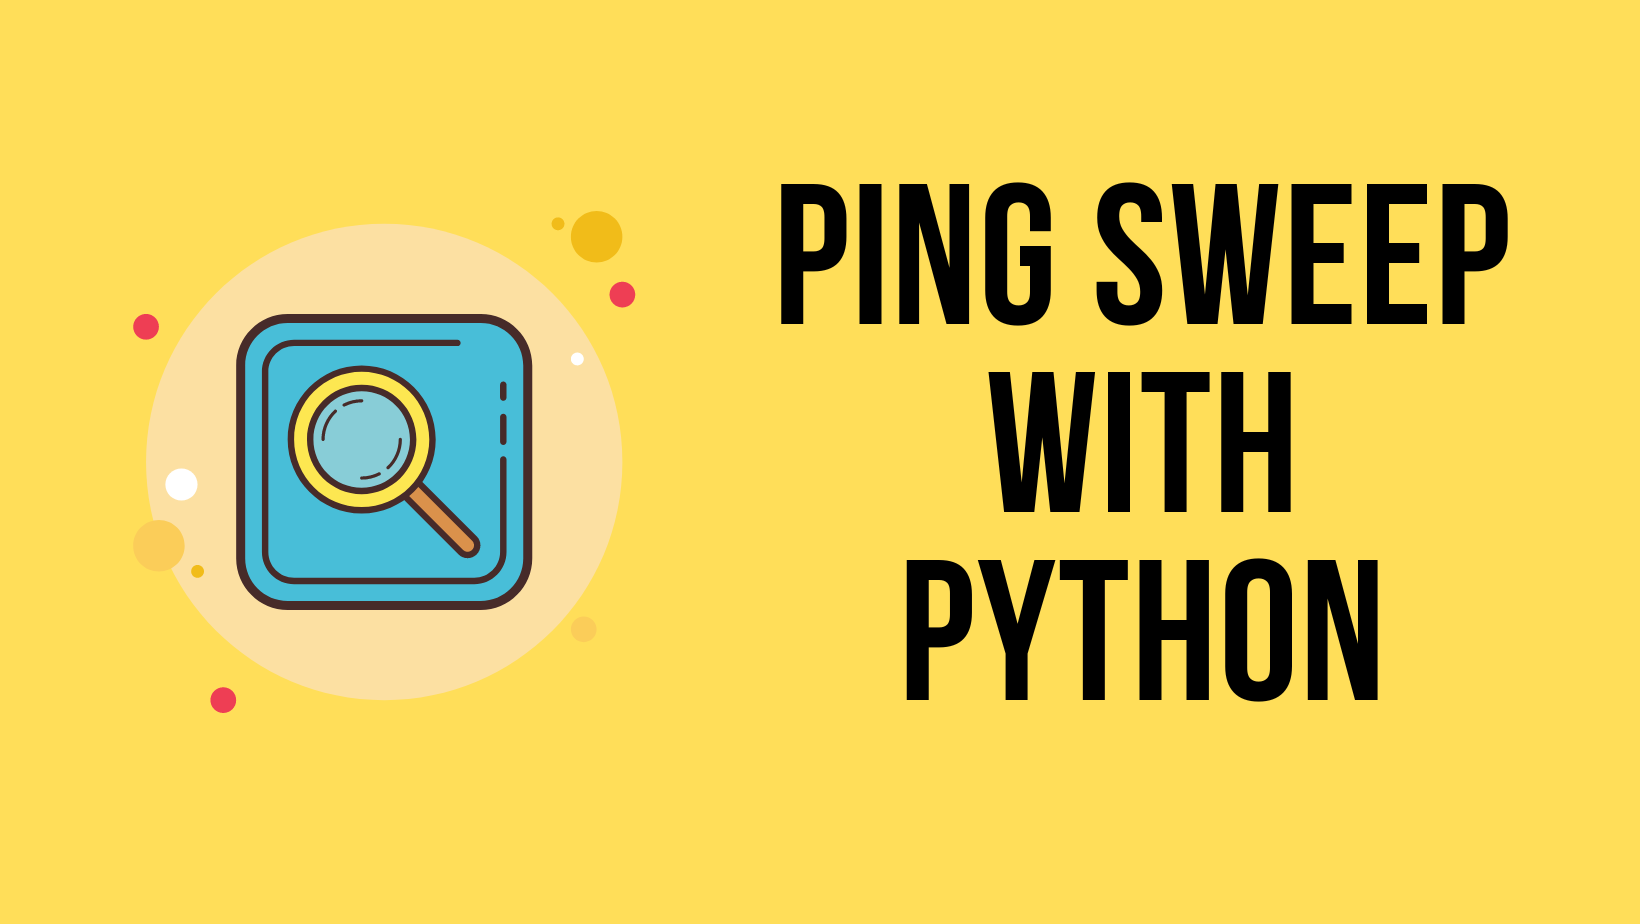 Python ping